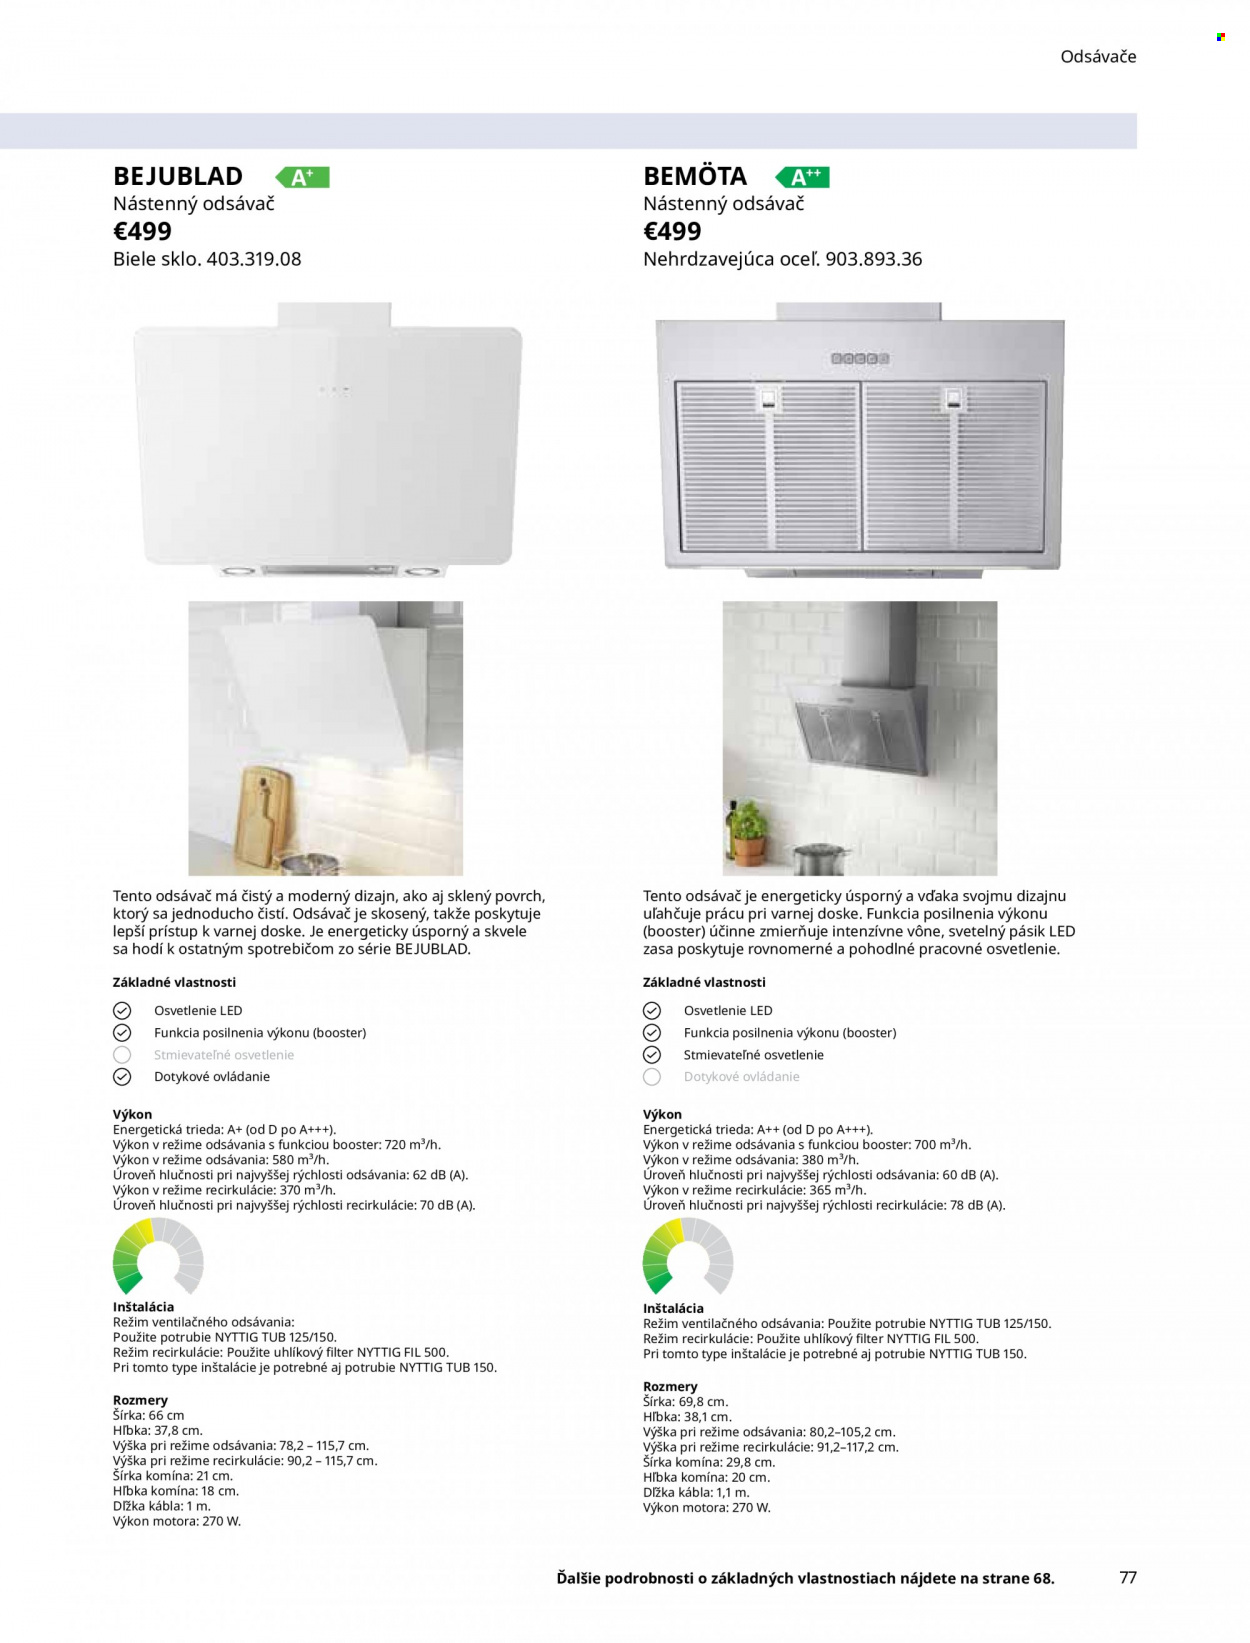 Leták IKEA - Produkty v akcii - odsávač pár. Strana 77.